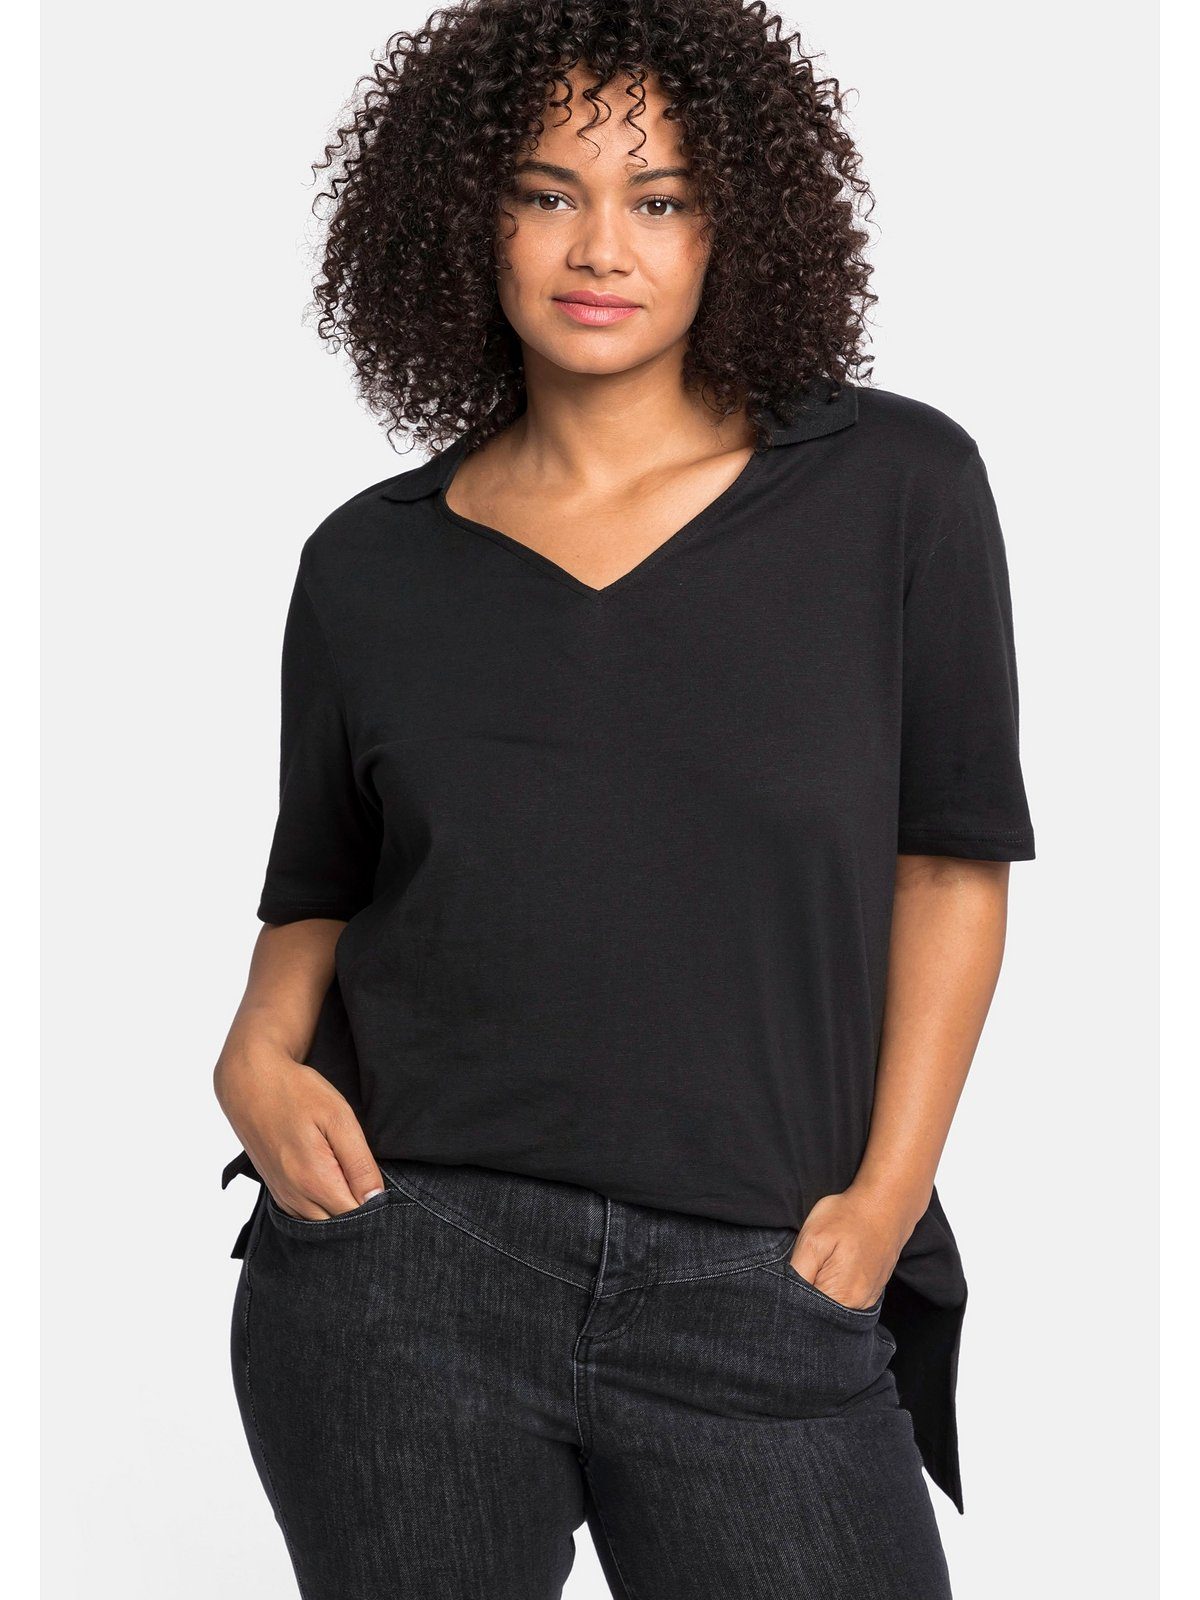 Sheego T-Shirt Größen Große und schwarz asymmetrischem Saum mit Polokragen